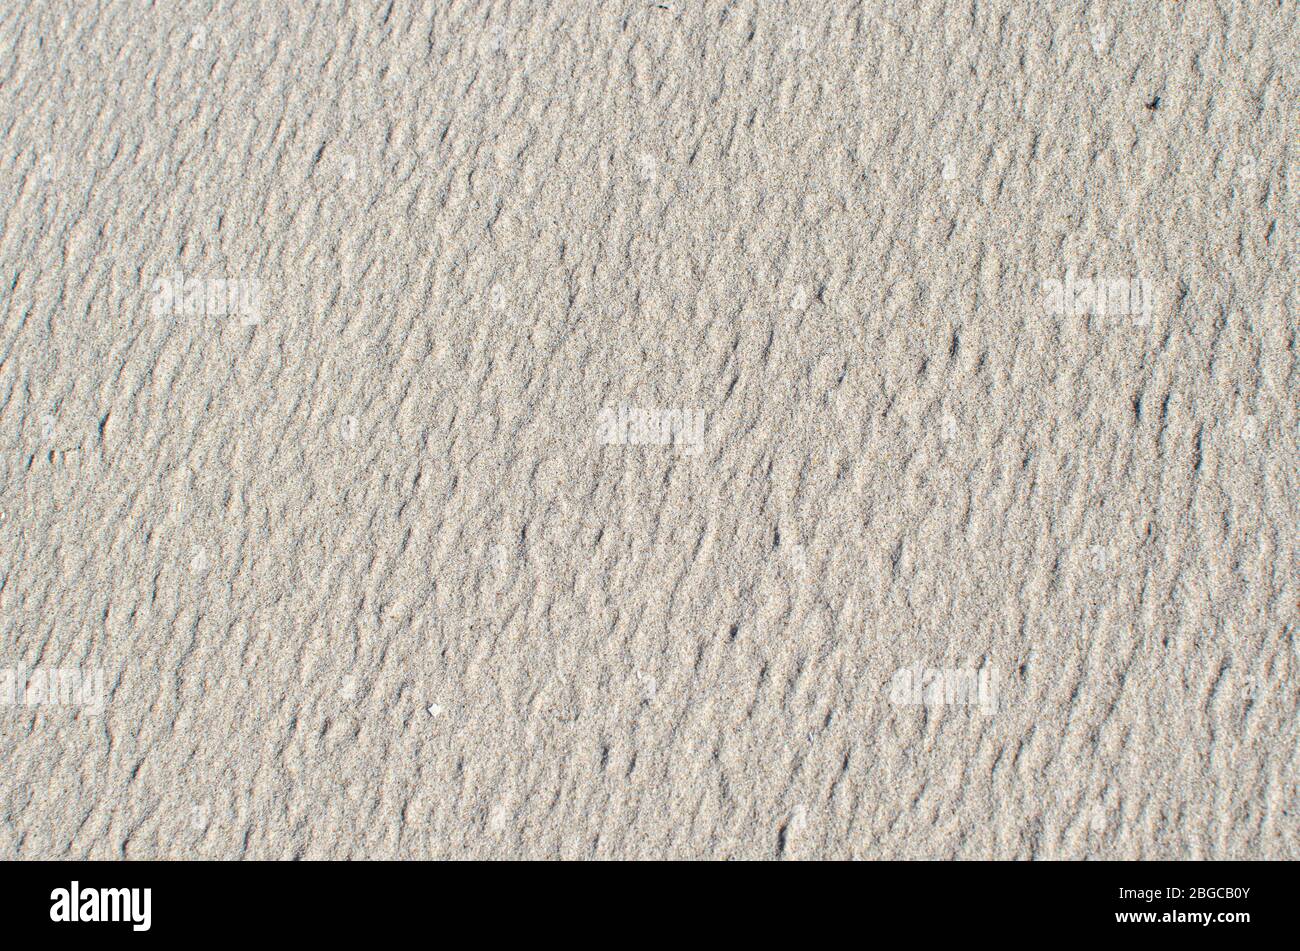 Texture de sable blanc ou jaune clair, arrière-plan Banque D'Images